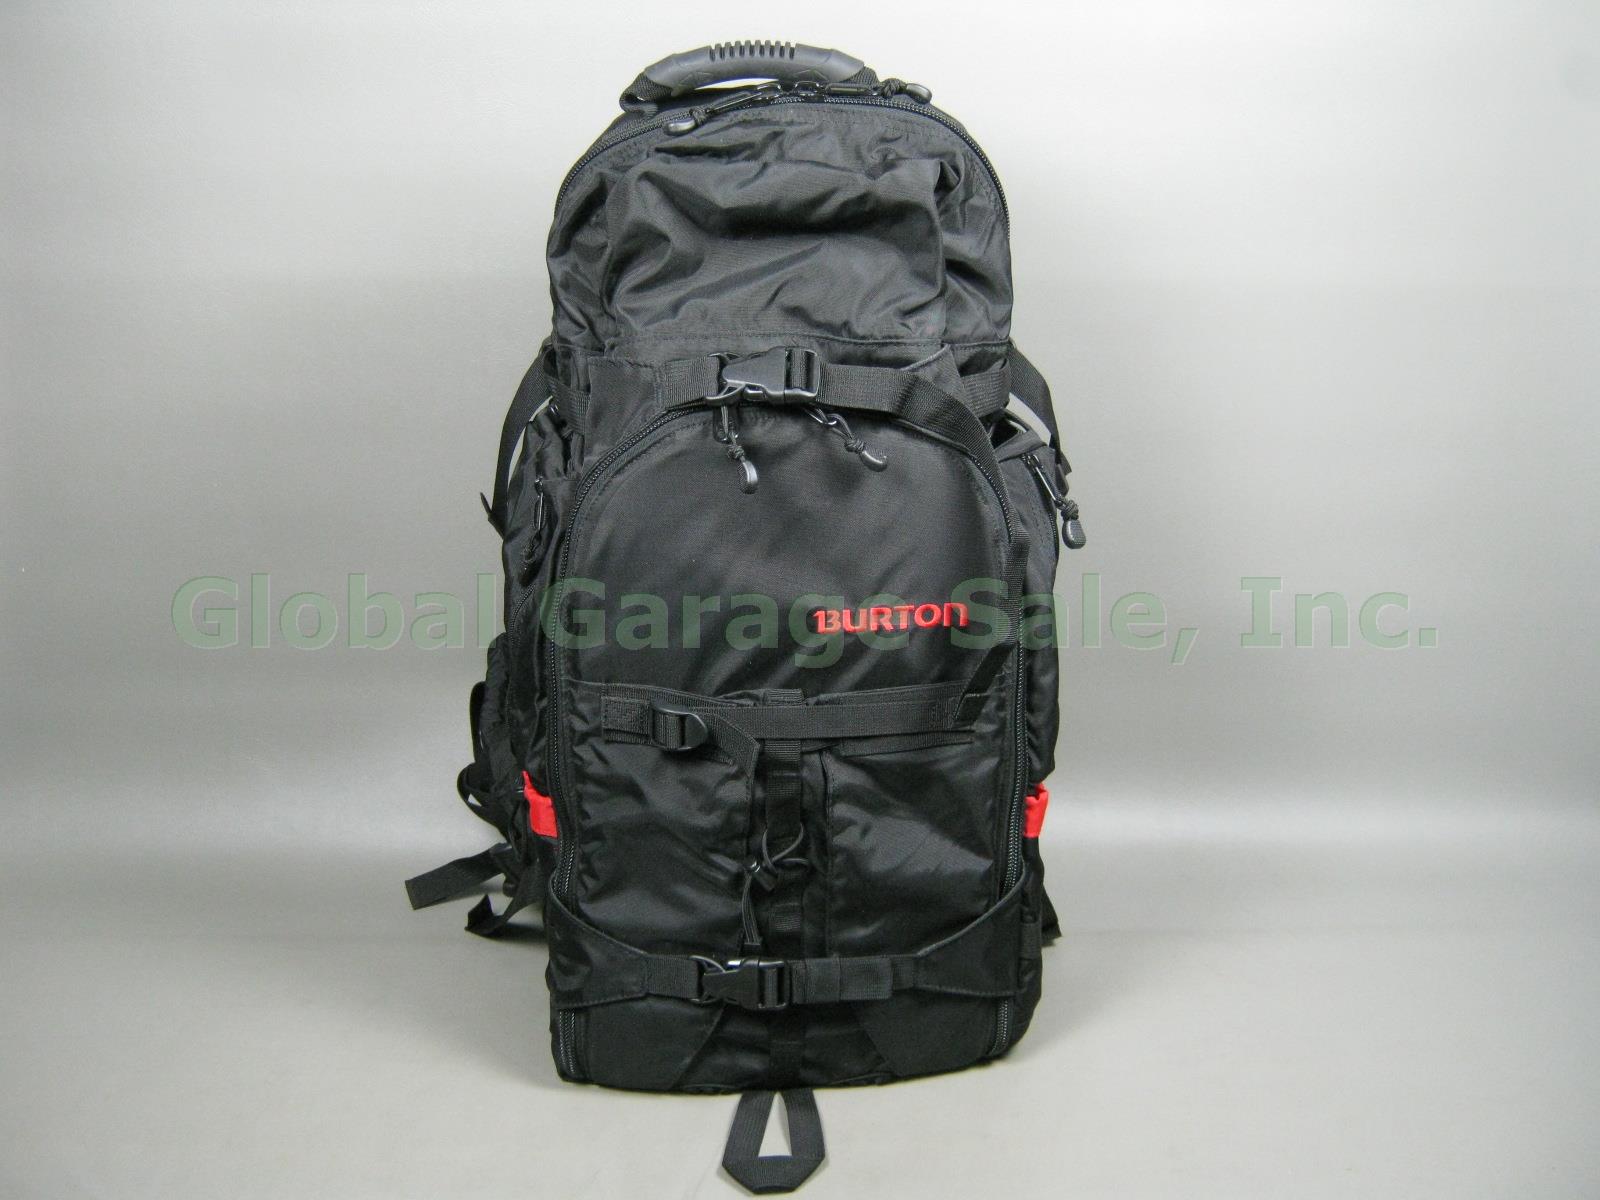 NWOT Burton Snowboards Large Professional Camera Backpack Pack Case Bag NO RES!